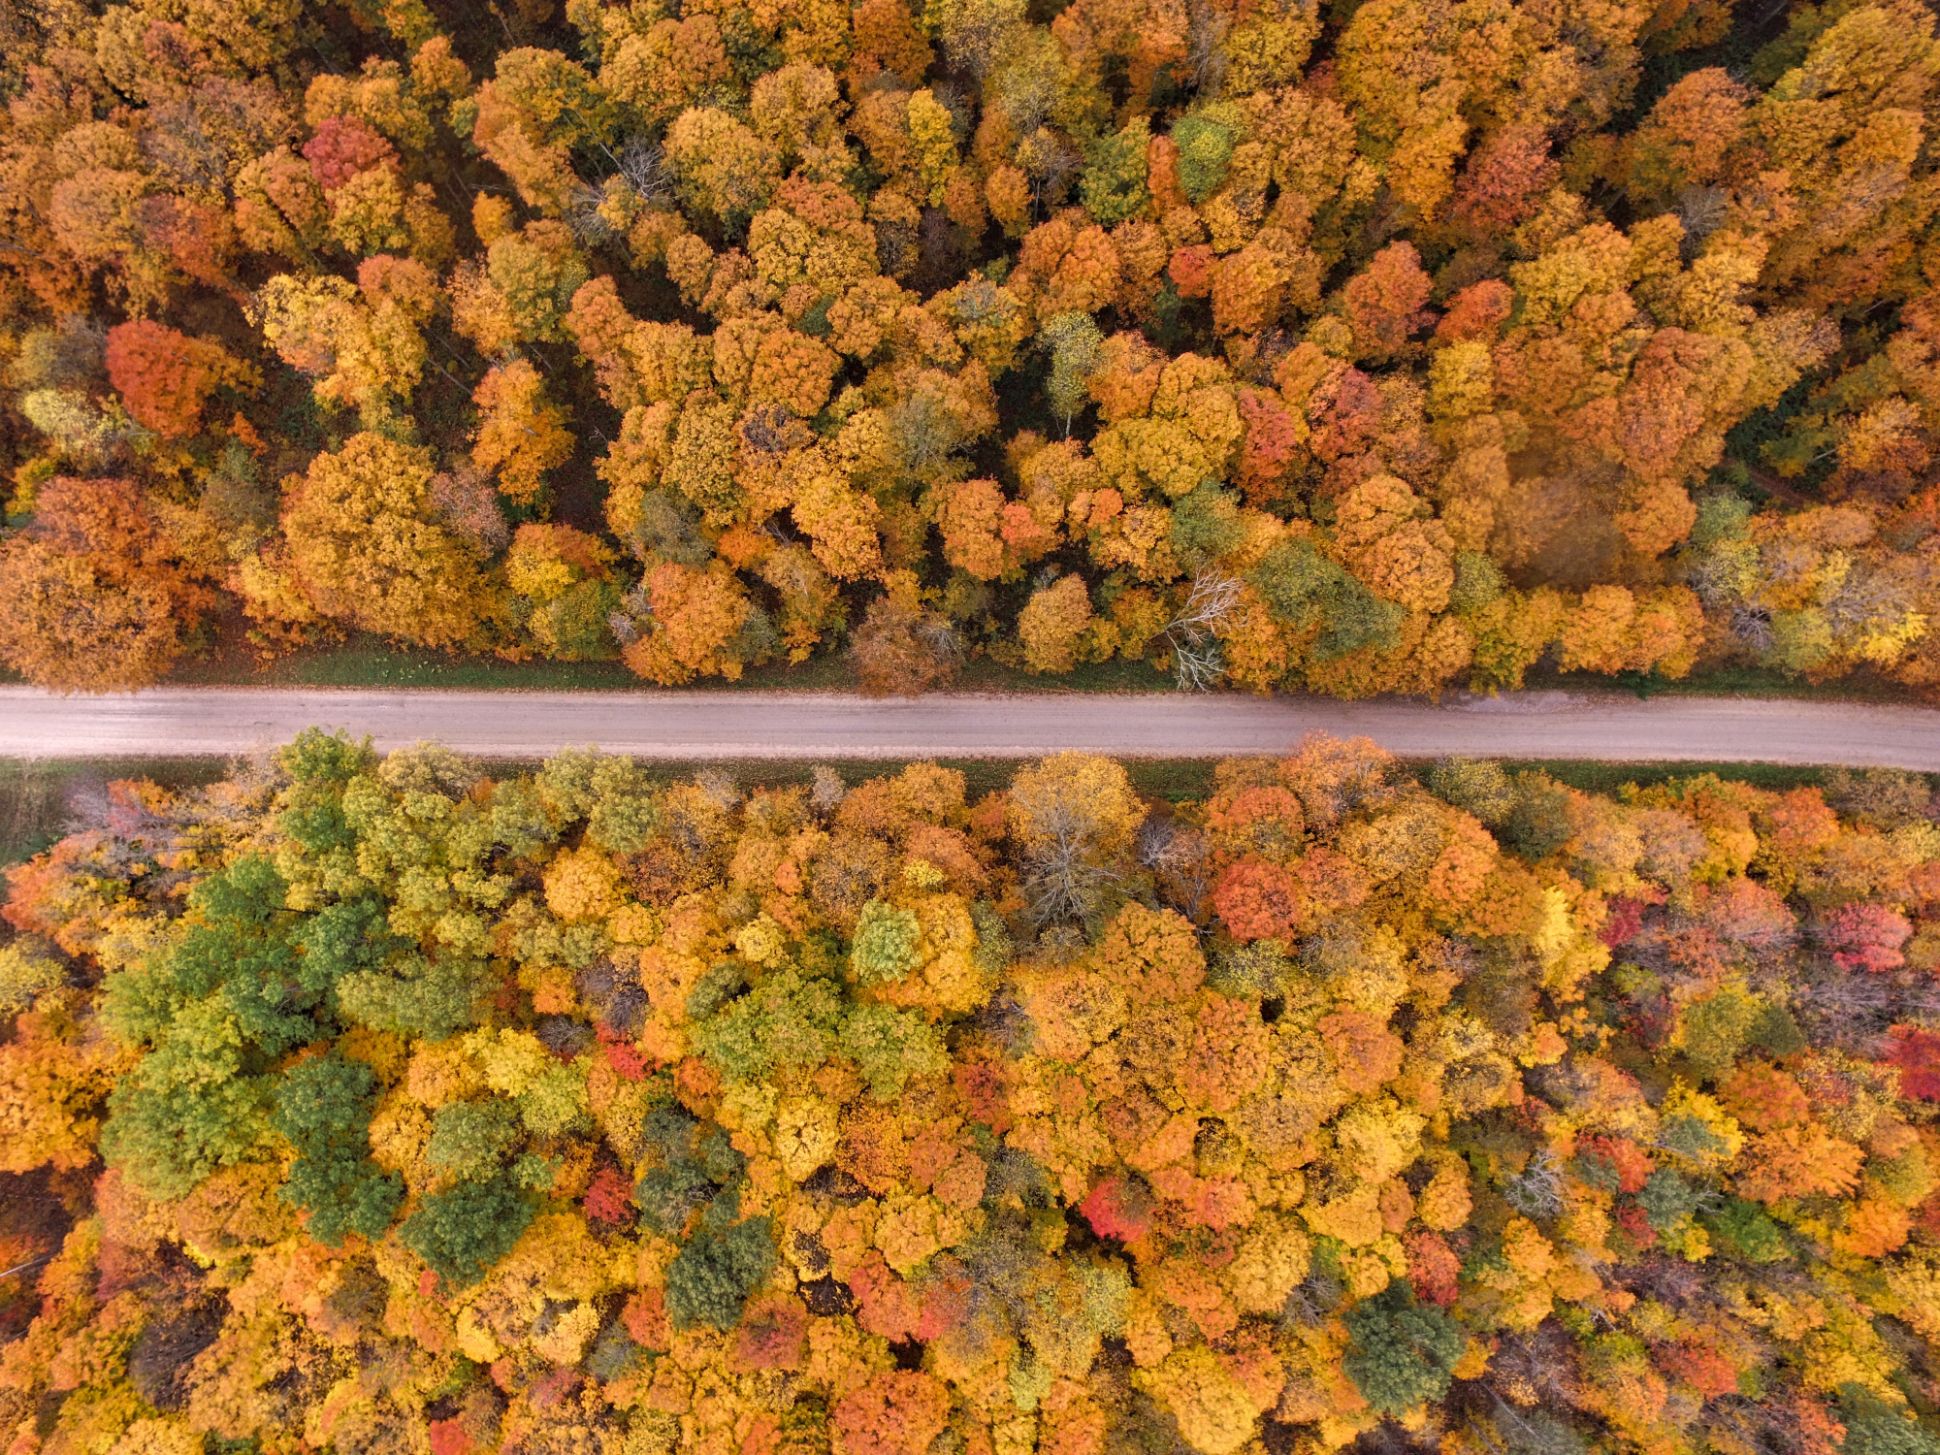 Vista aérea de la carretera rodeada de árboles de color otoñal.